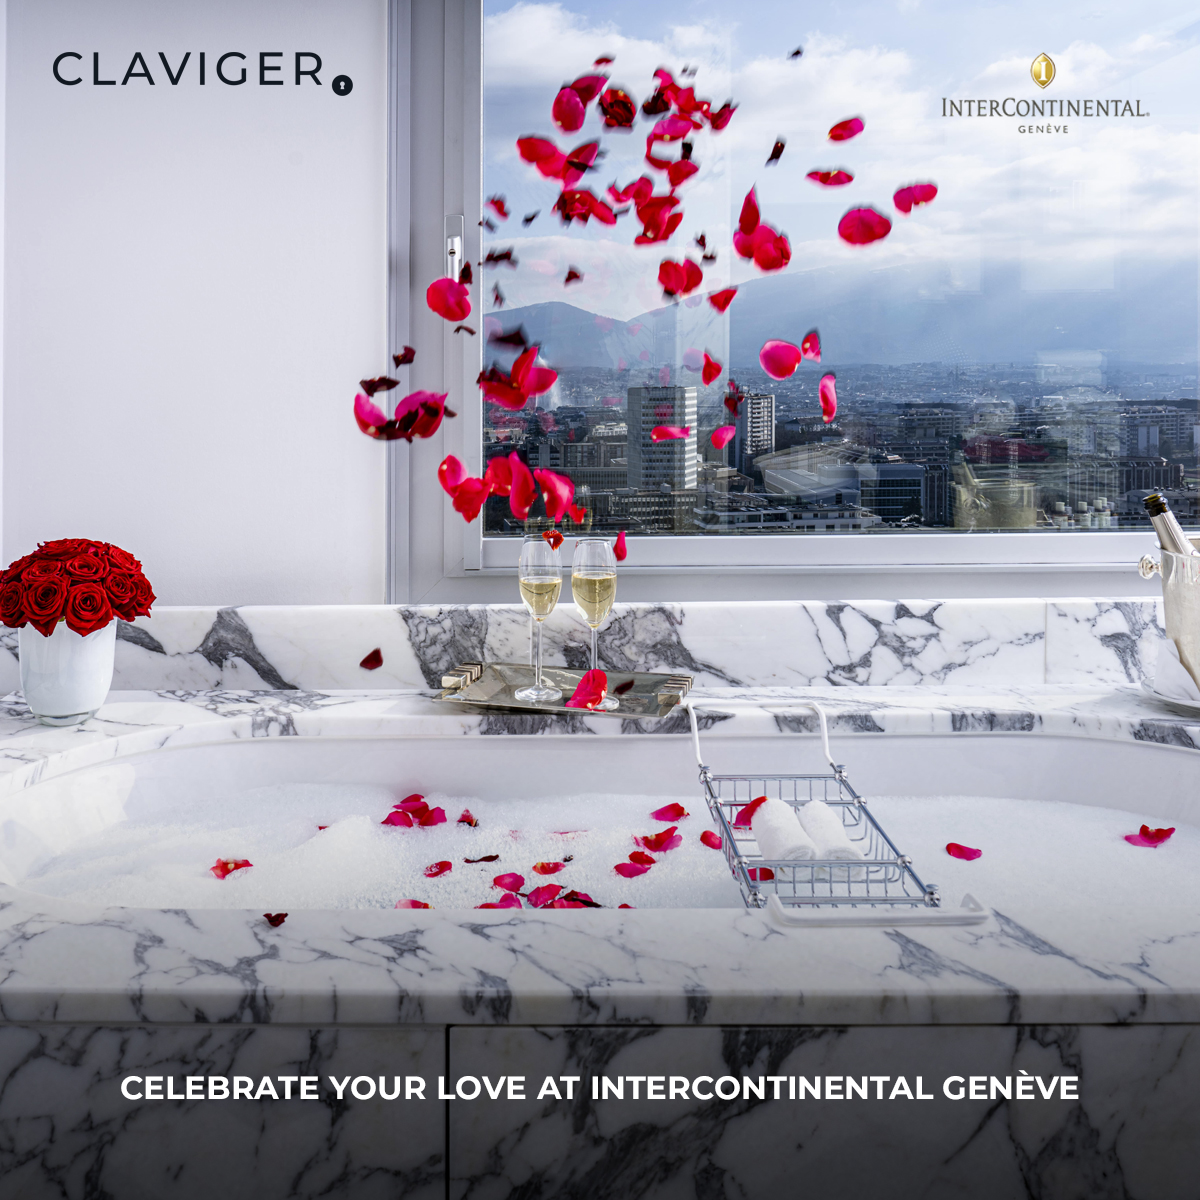 #ClavigerME #LuxuryHospitality #LuxuryTravel #IntercontinentalHotels #IntercontinentalHotelGroup #Geneva #Europe #EuropeTravels